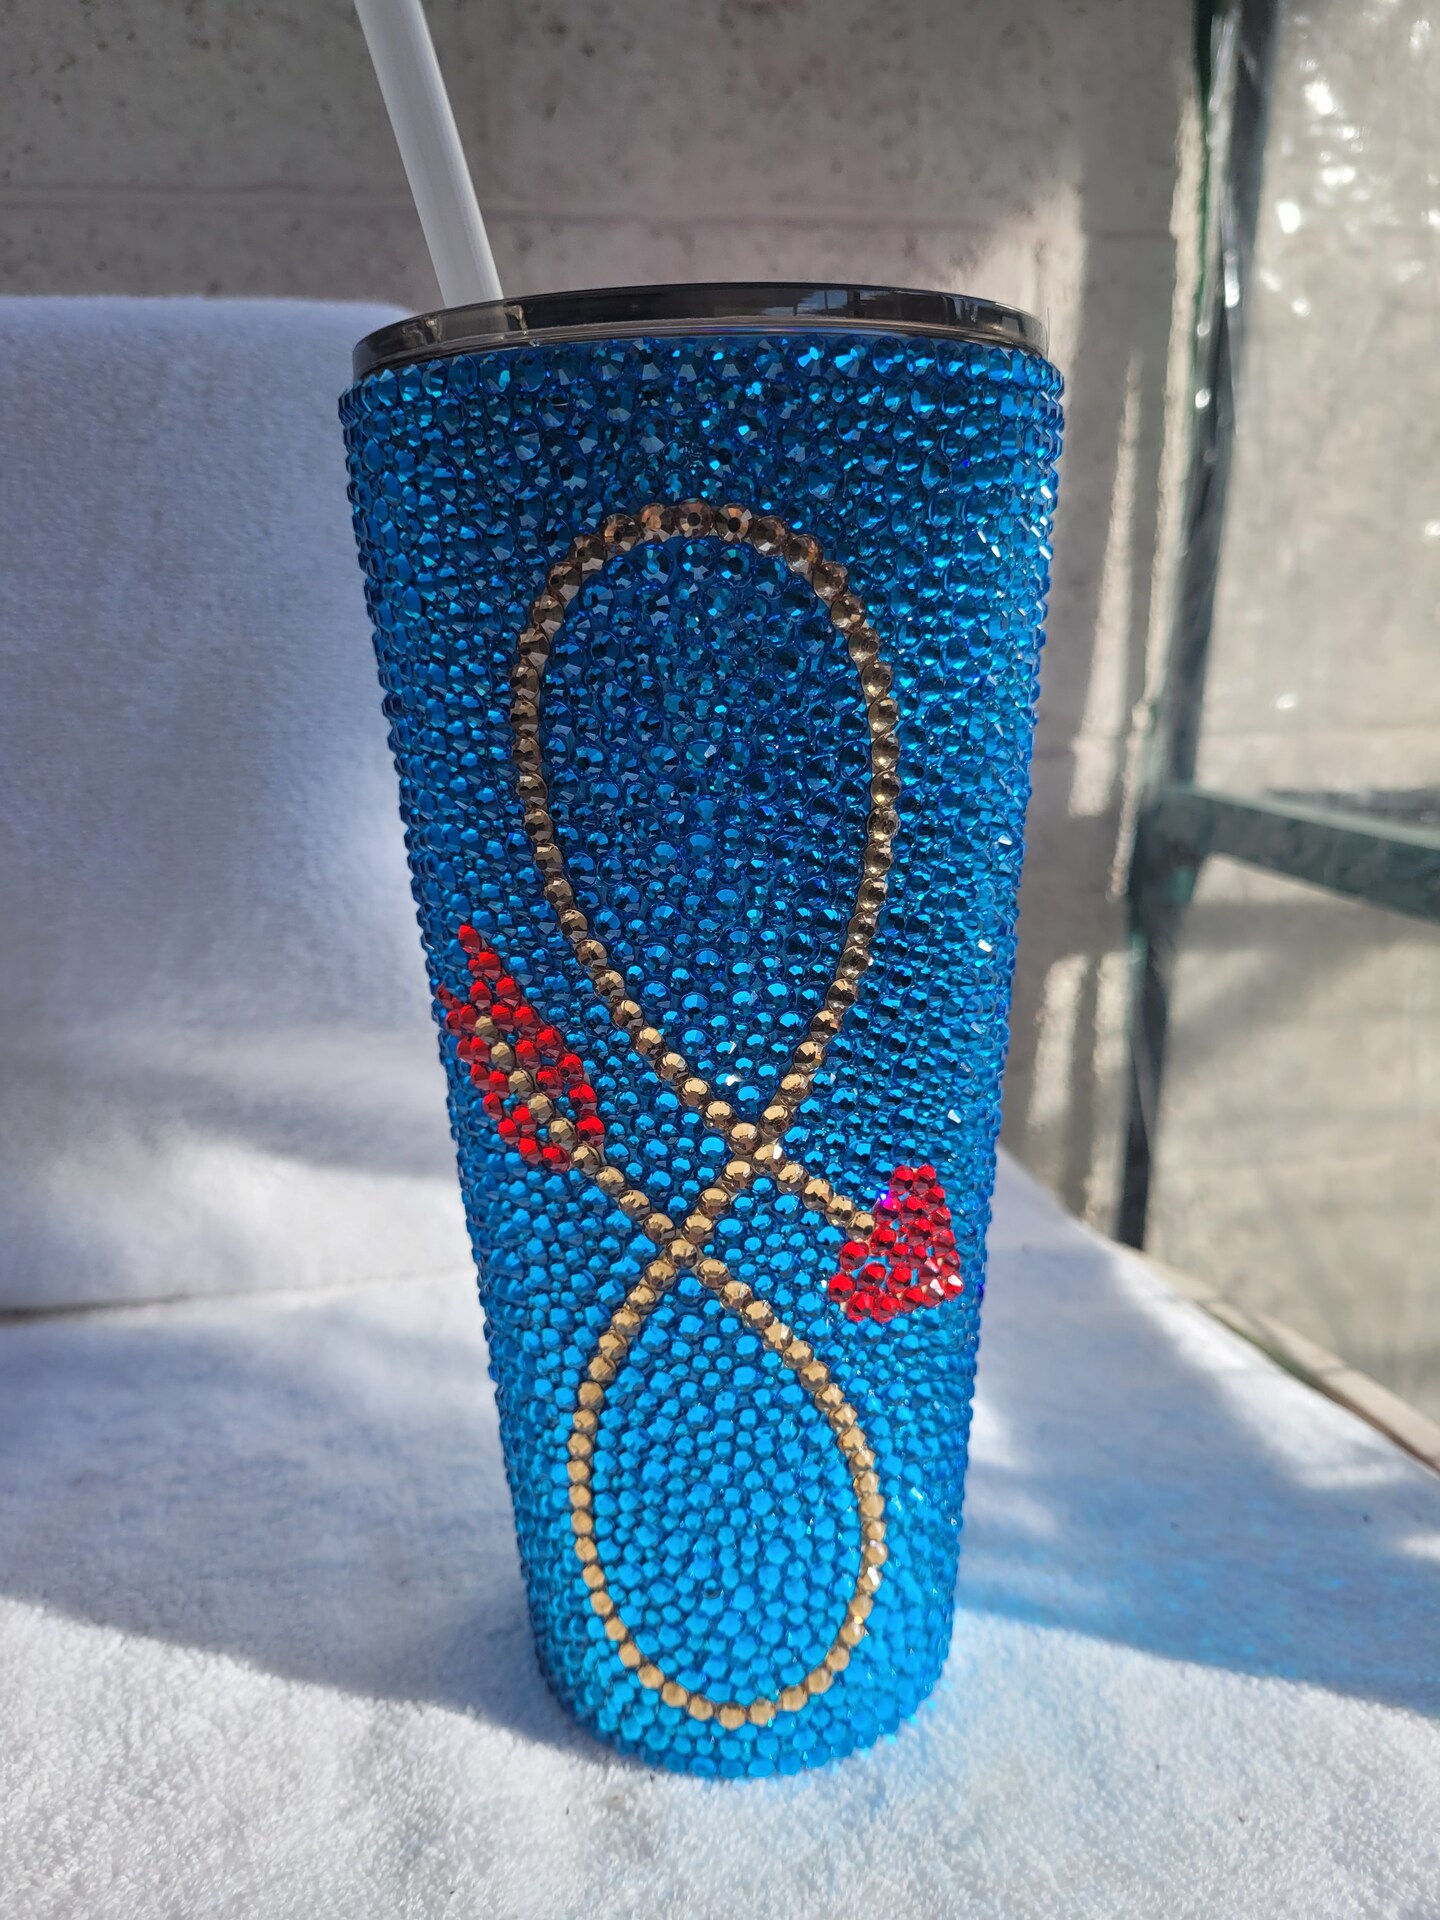 Rhinestone Tumbler Bling Cup handmade. Handmade Rhinestone Women